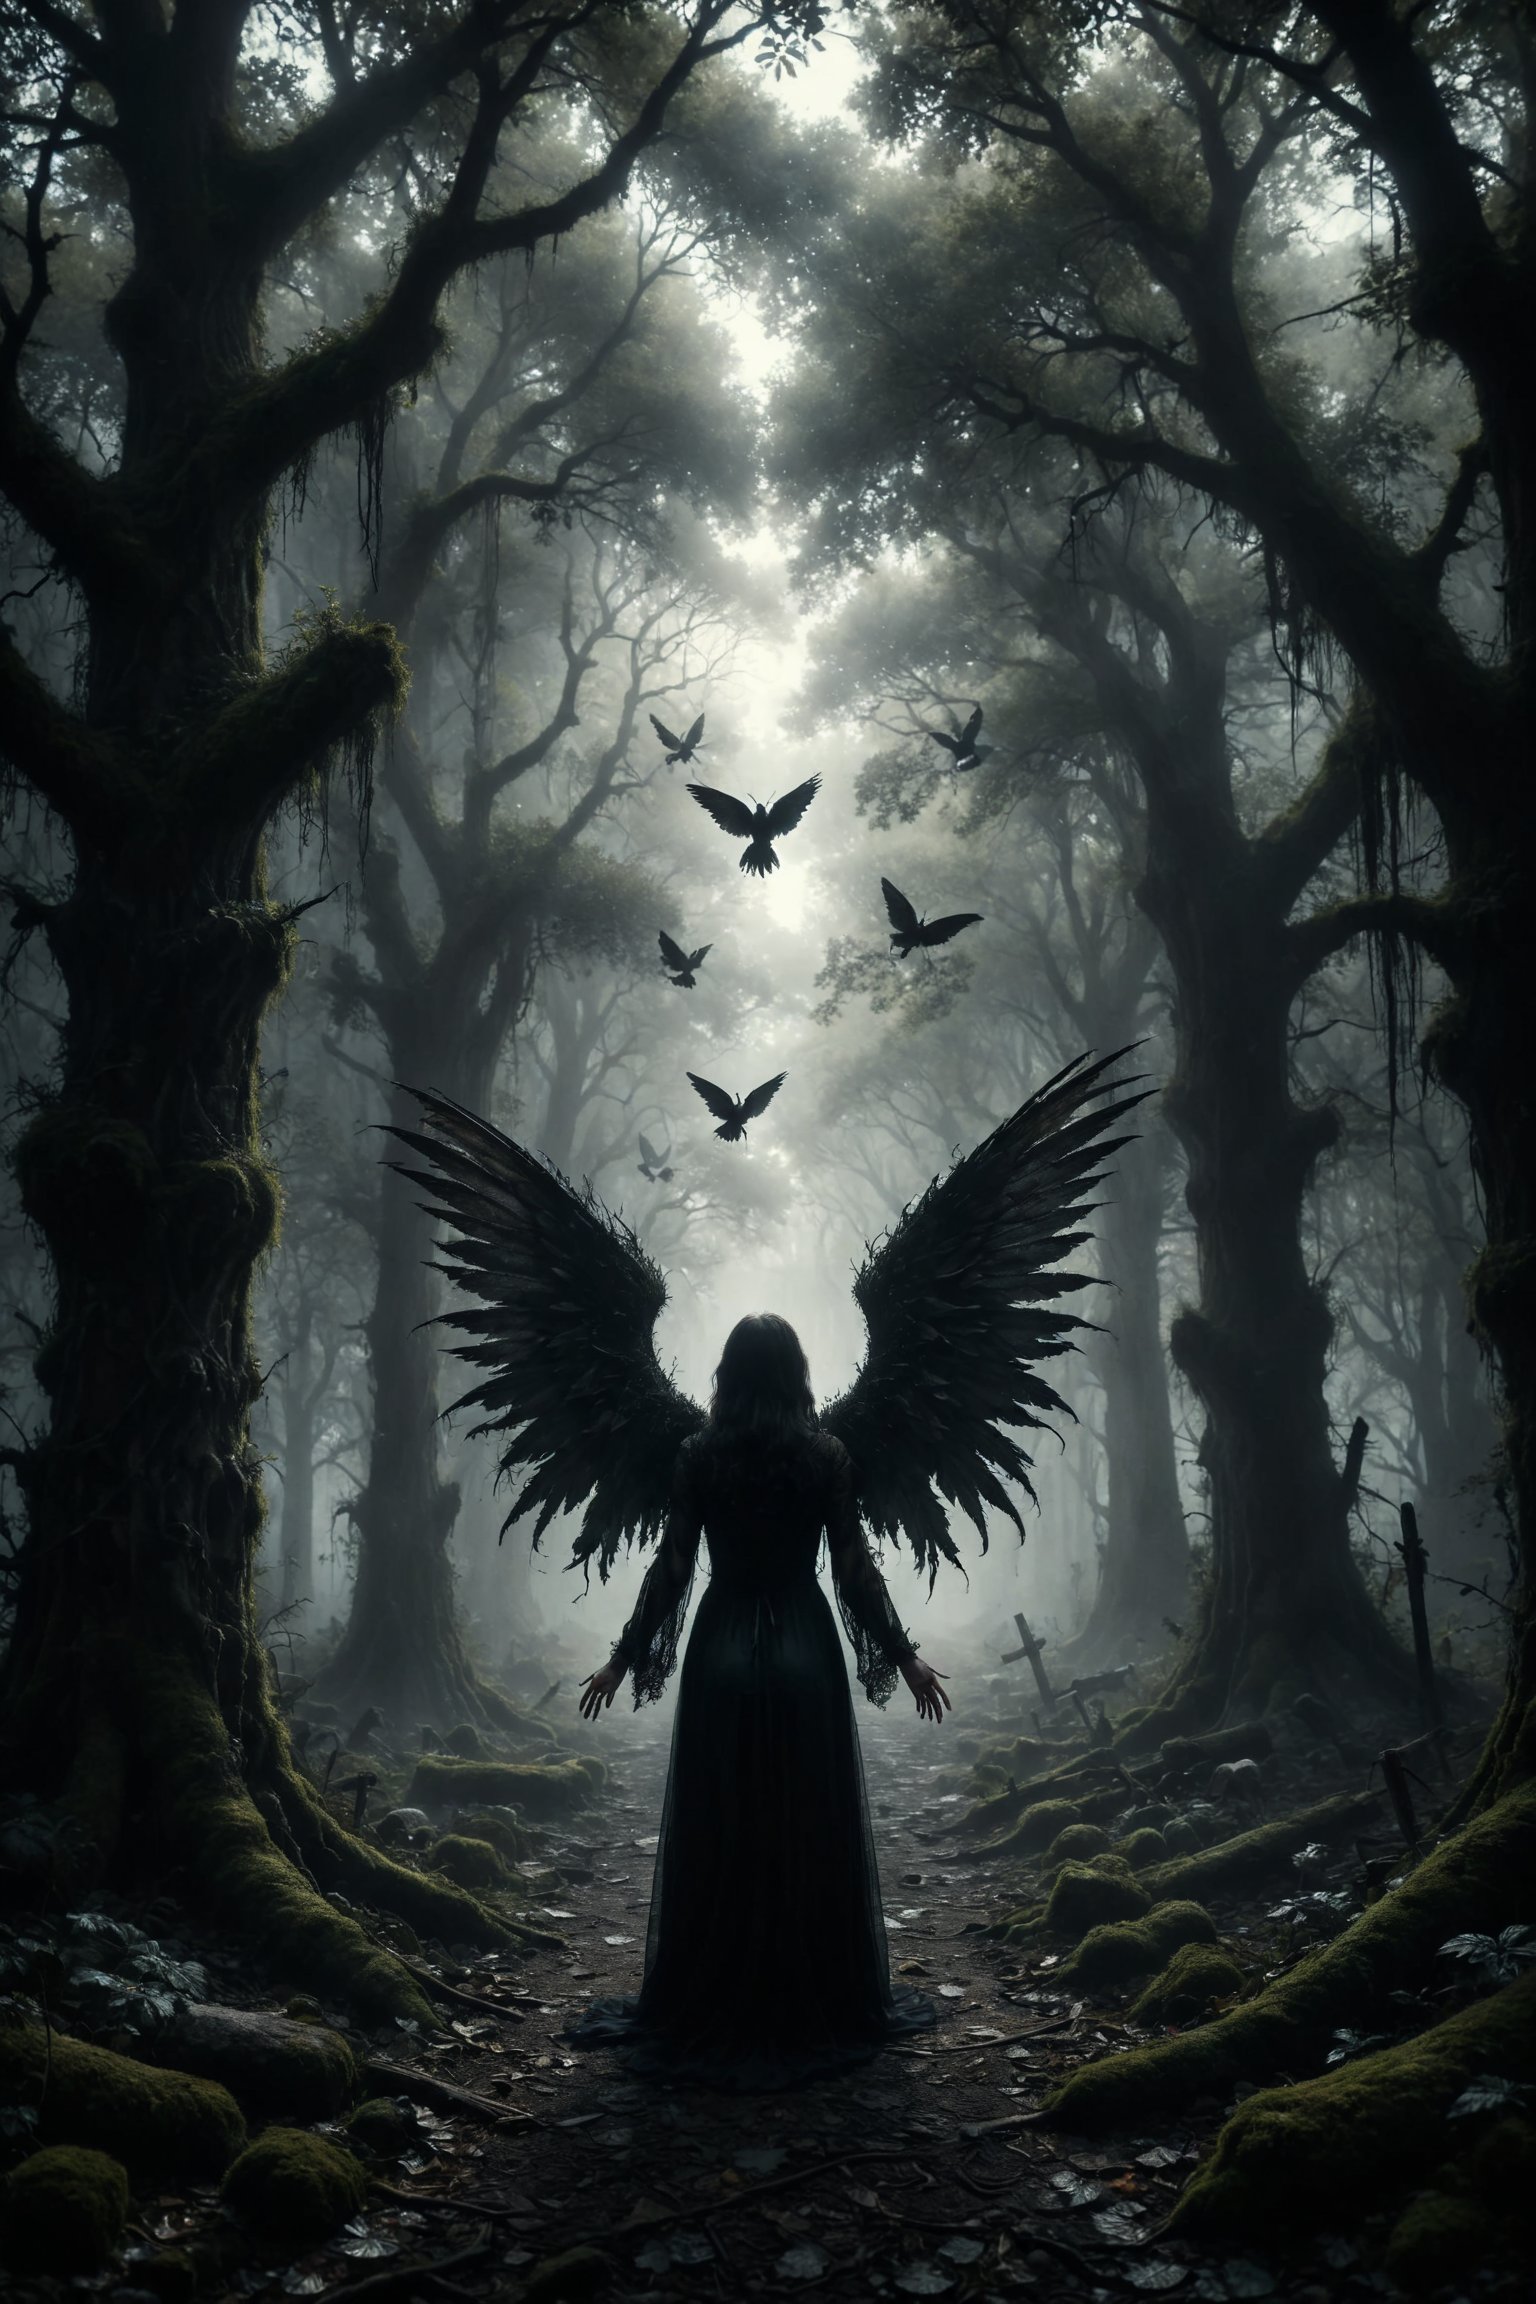 mitica y misteriosa escena gotica de Un hada oscura con alas translúcidas, susurrando secretos y profecías en un bosque de árboles retorcidos y misteriosos.